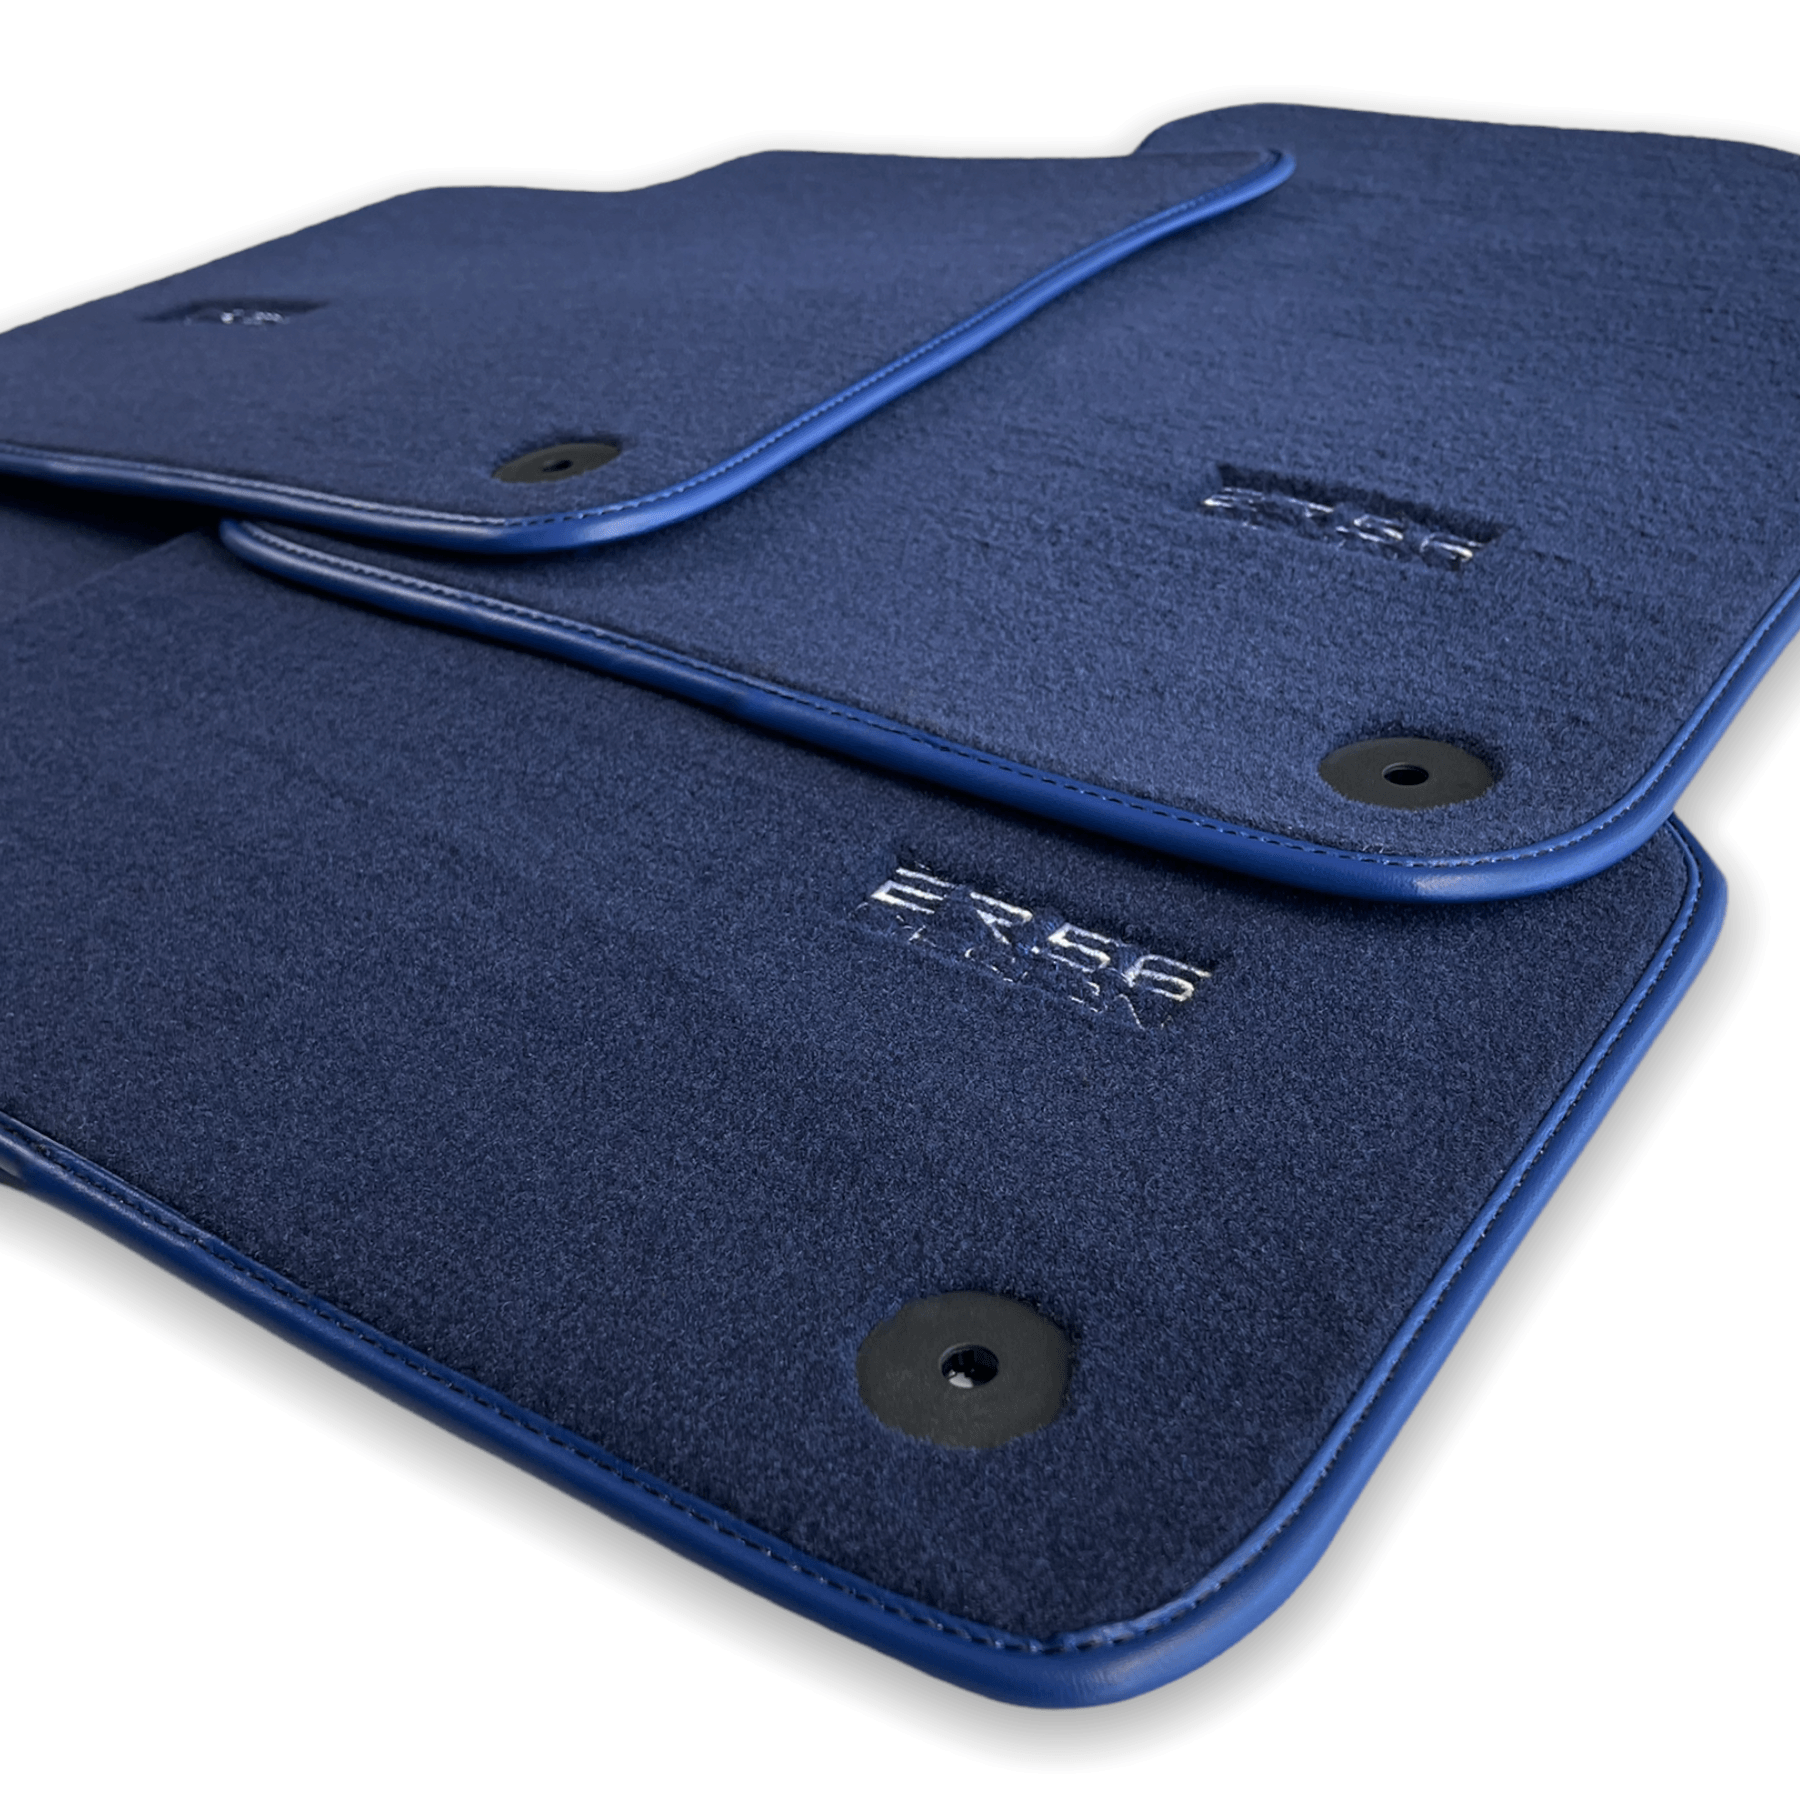 Dark Blue Floor Mats for Audi A3 - Convertible (2014-2020) | ER56 Design